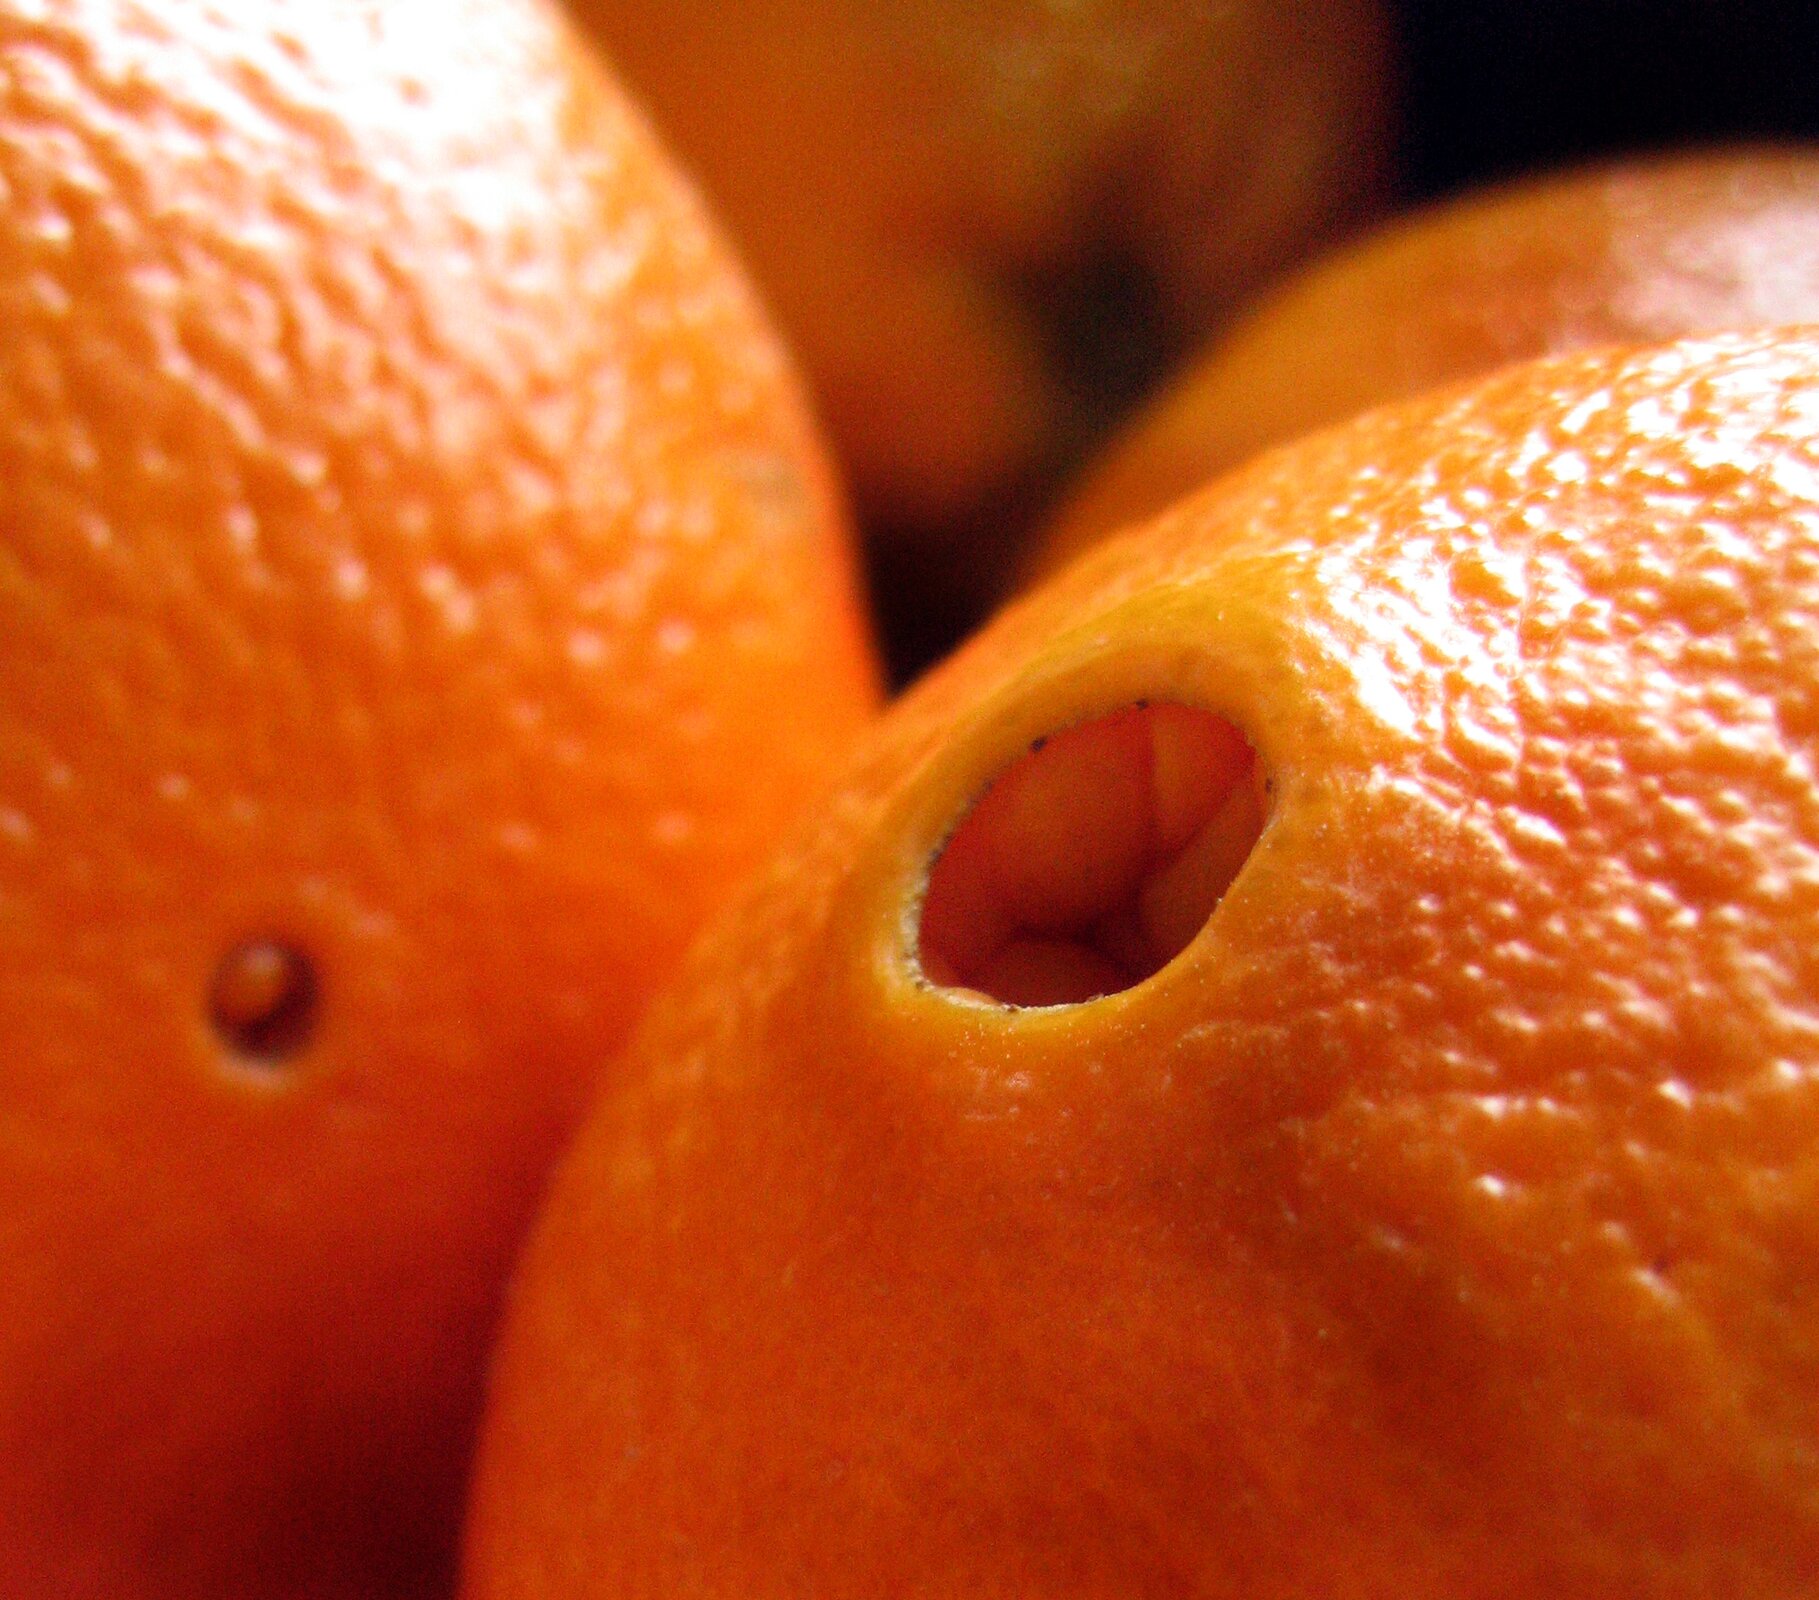 Zdjęcie przedstawia pomarańczę z charakterystycznym ,,pępkiem" - dziurką.  